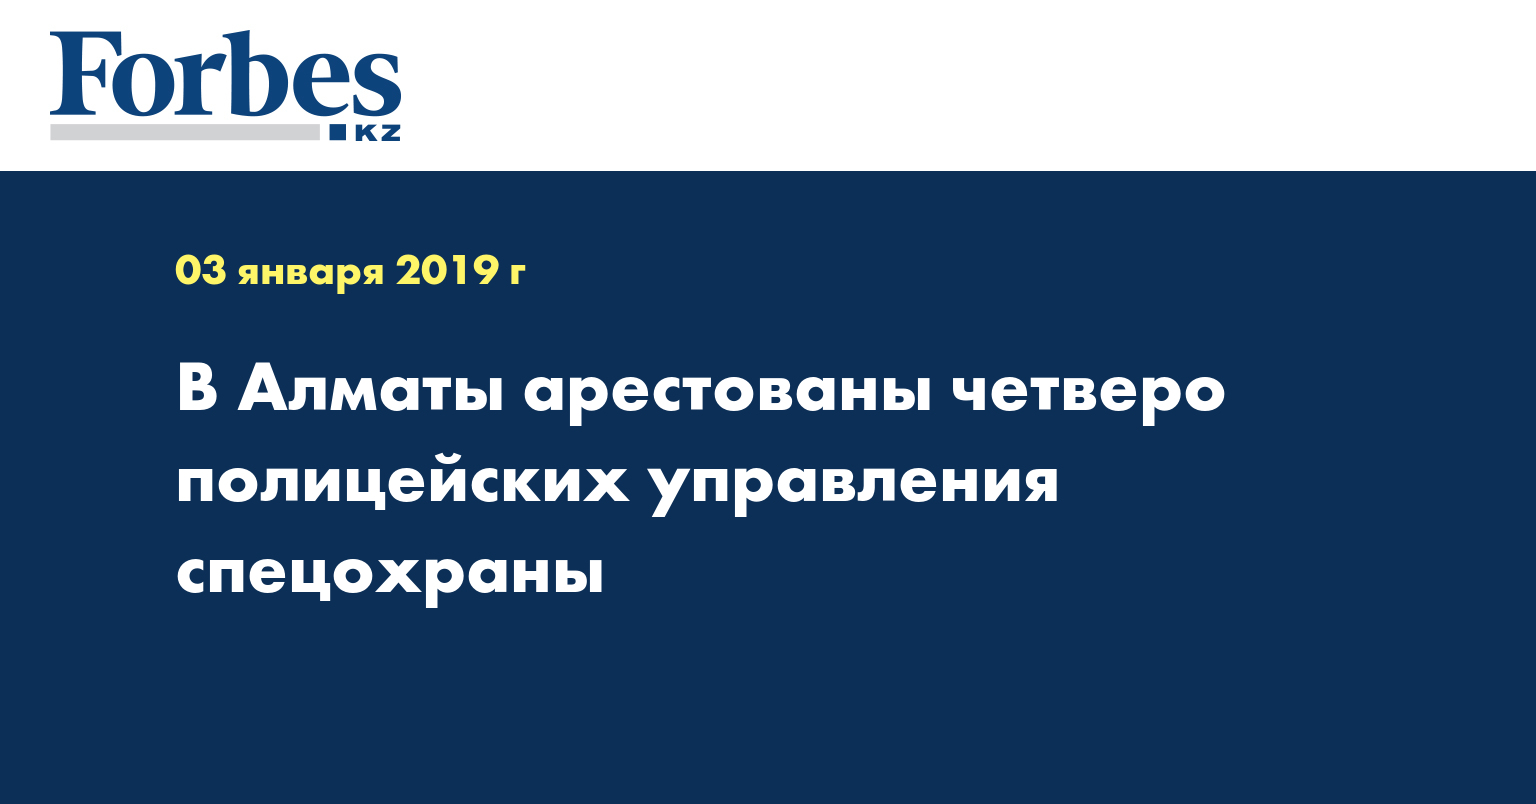 В Алматы арестованы четверо полицейских управления спецохраны